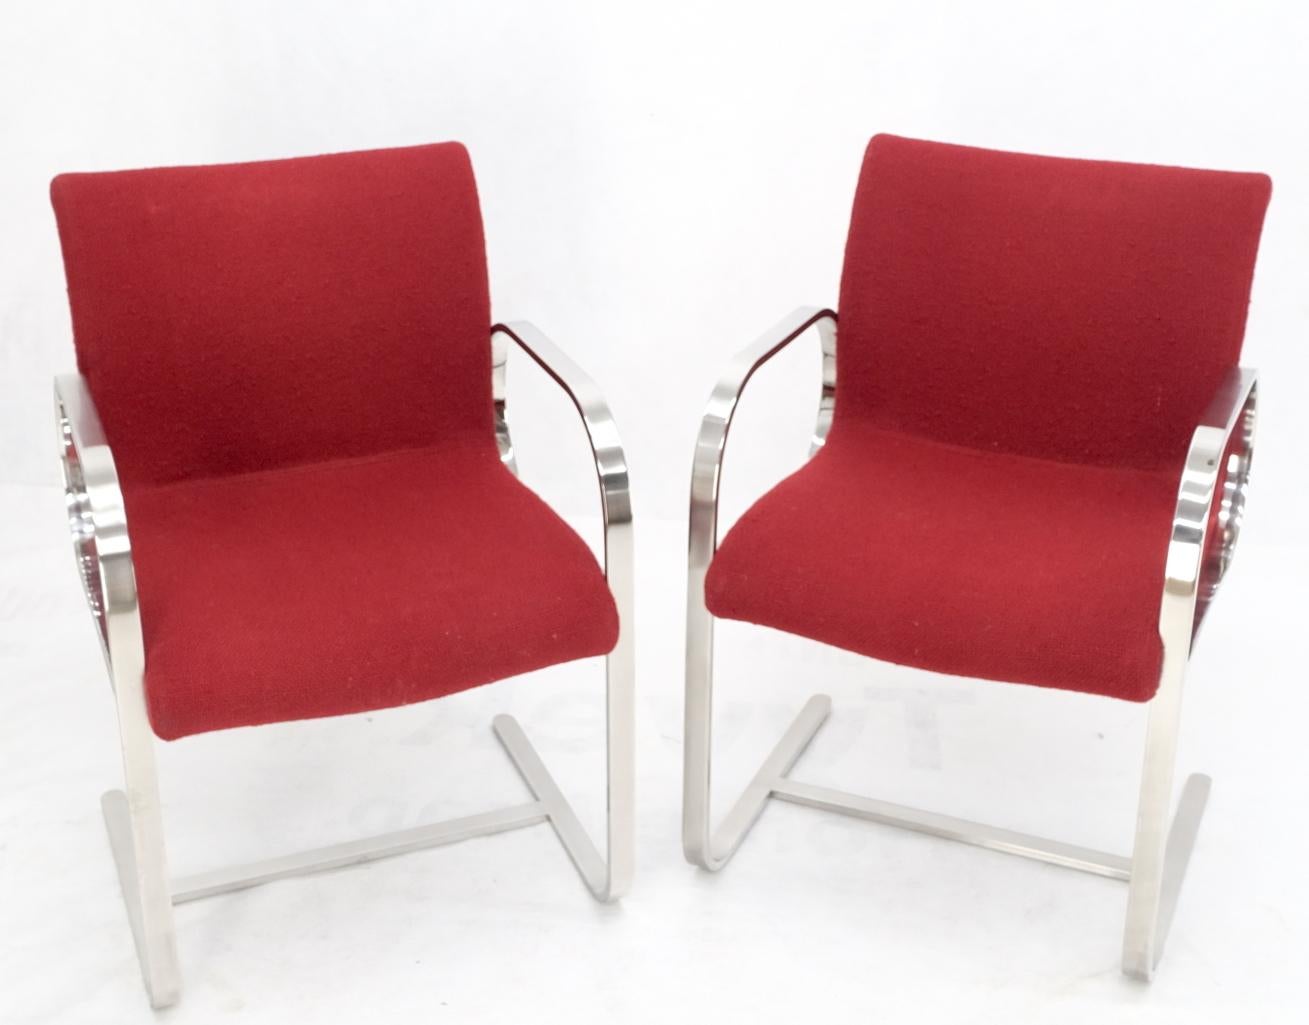 Paar schwere solide Edelstahl geformt biegen Rahmen Seite Lounge Stühle rot gepolstert.
Hochwertige Metallarbeiten wie Biegen, Schweißen und Polieren von rostfreiem Stahl. Bauhaus Le Corbusier, Mies Van Der Rohe Dekor passend.